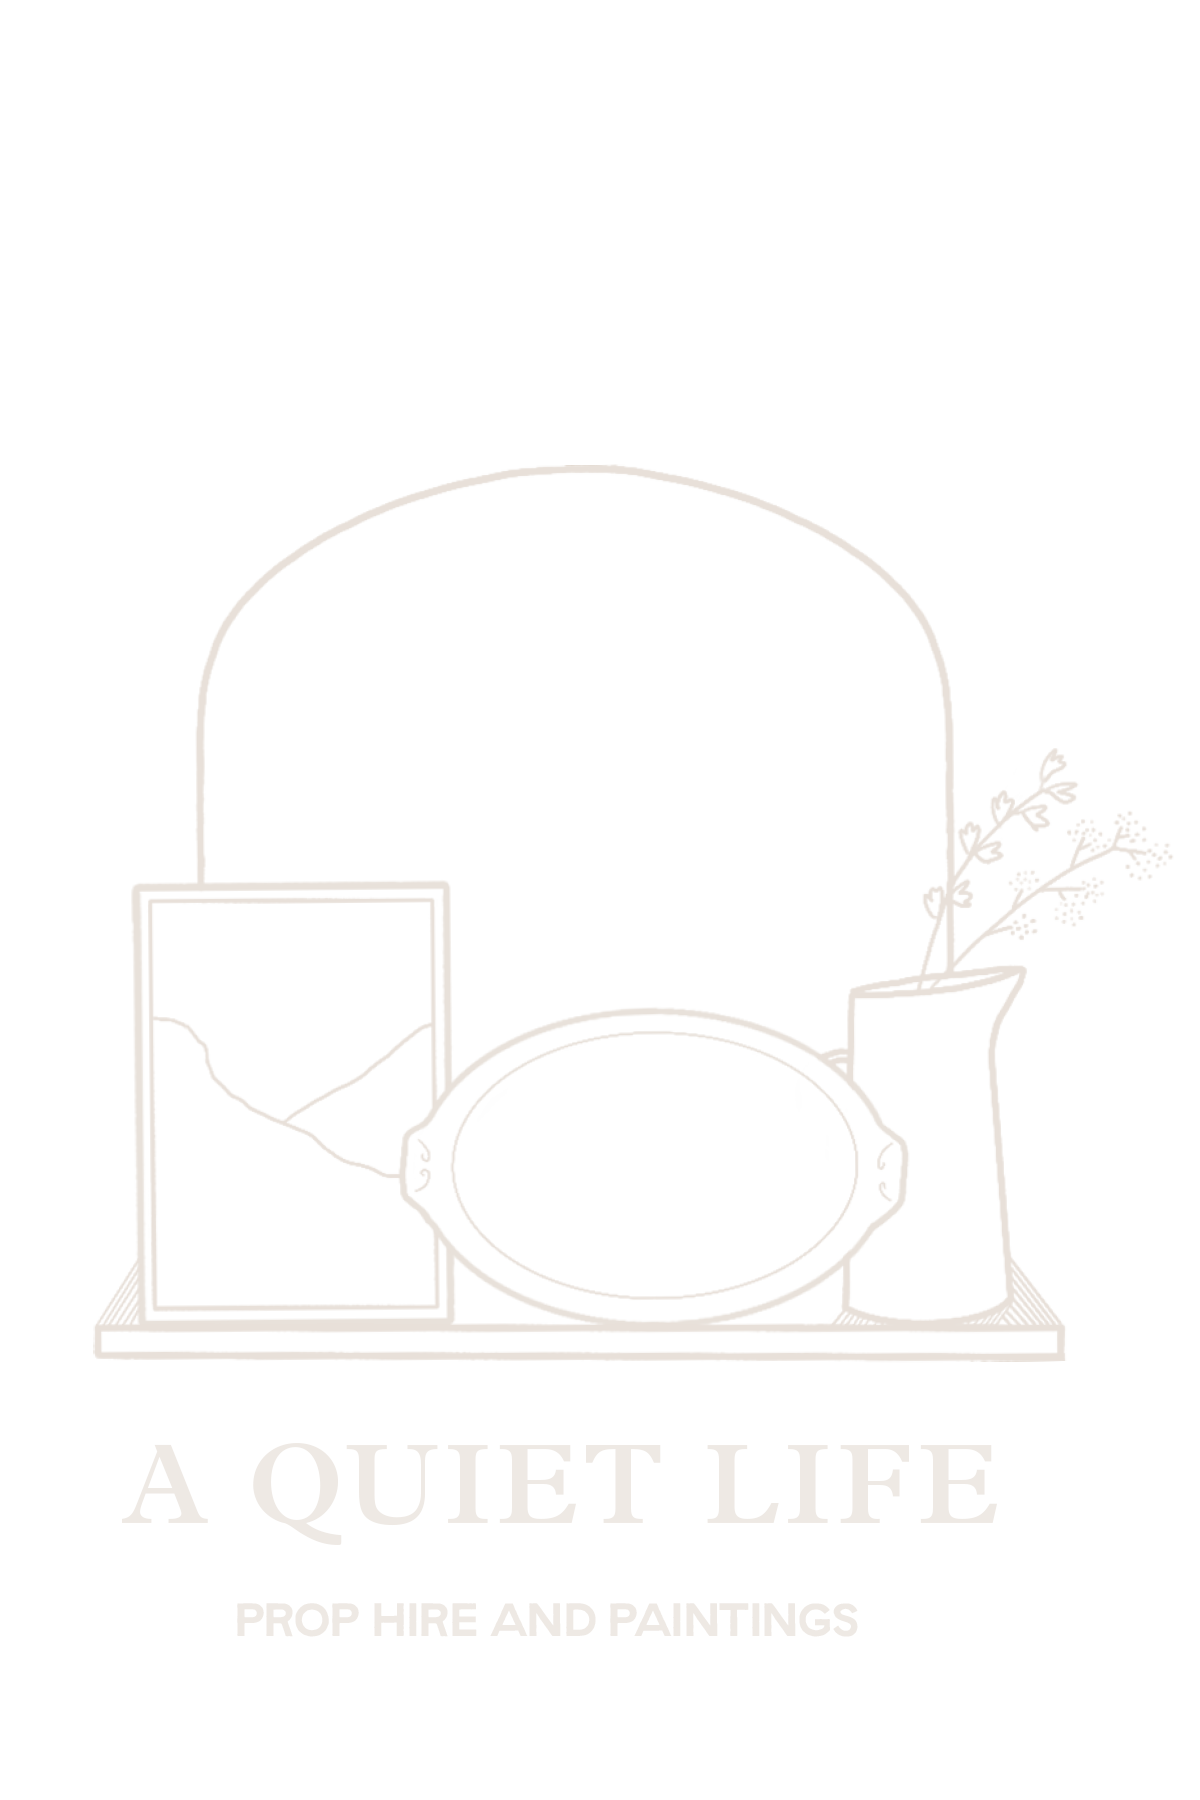 A QUIET LIFE